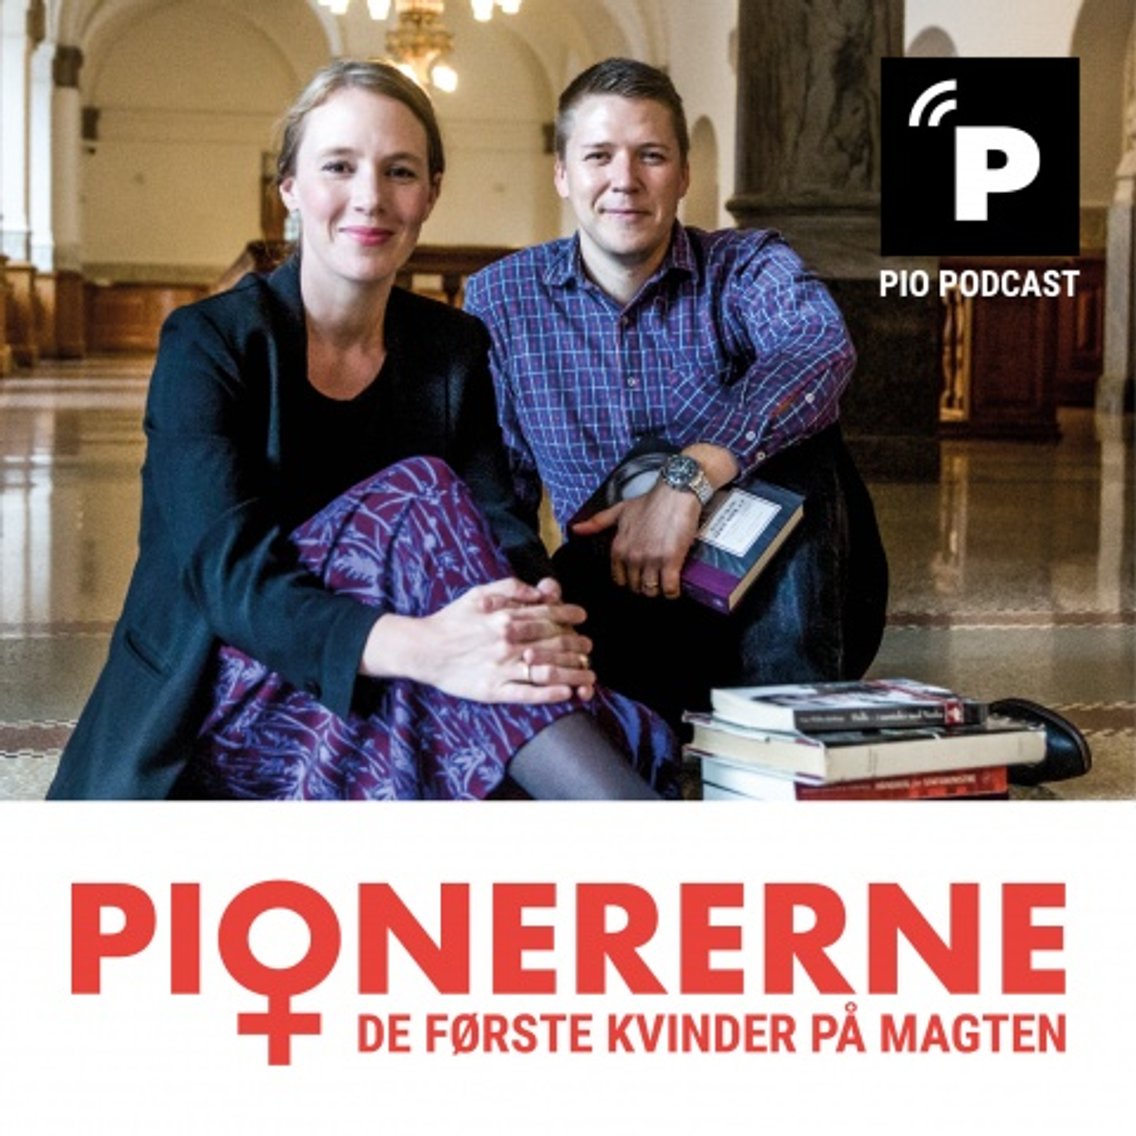 Pionererne - Cover Image